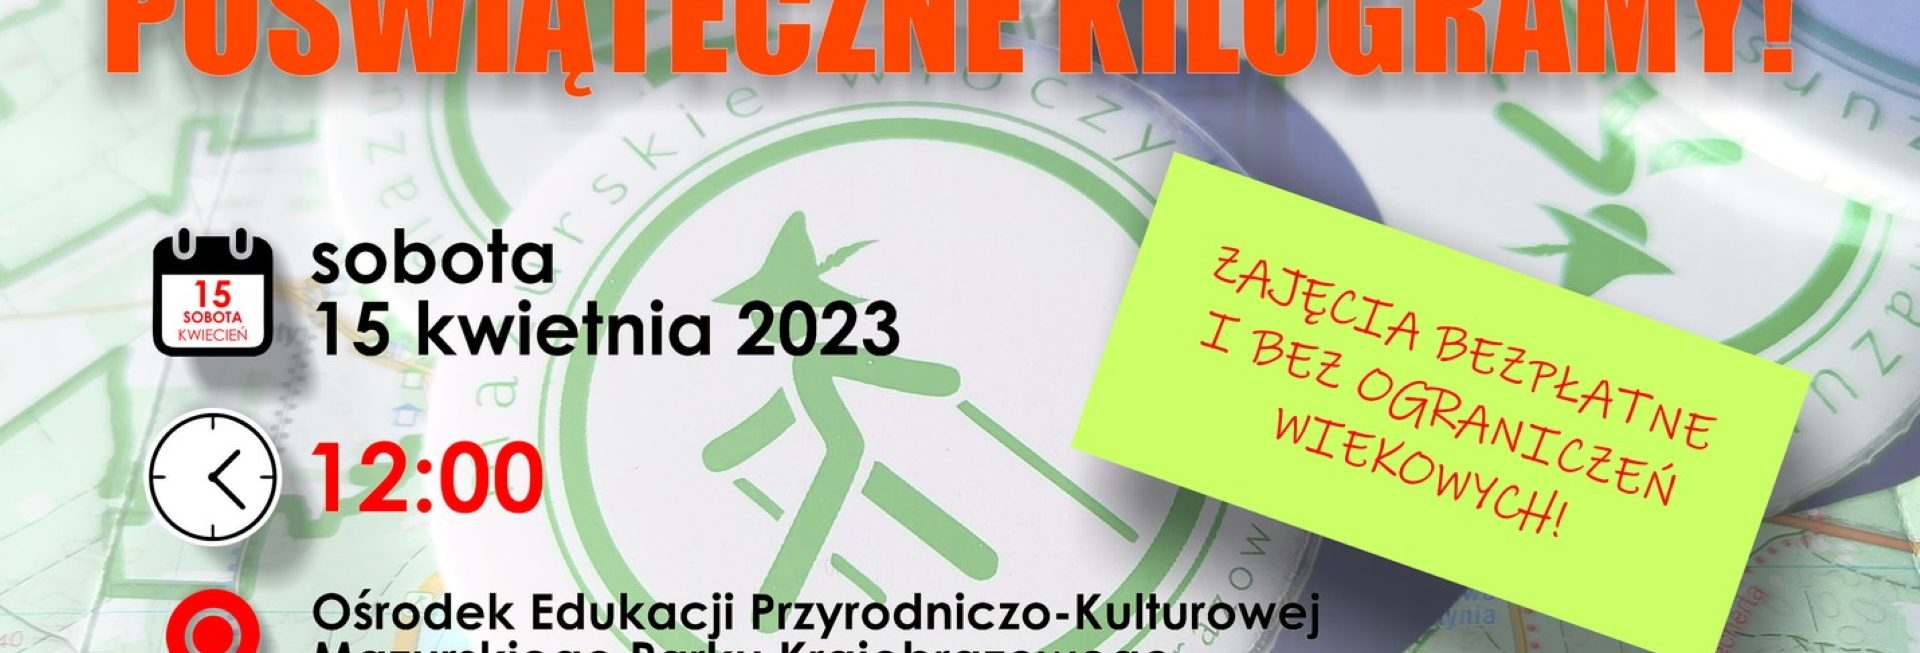 Plakat zapraszający w sobotę 15 kwietnia 2023 r. do Krutyni na Rajd "Na Szlaku Spalamy Poświąteczne Kalorie" Mazurski Park Krajobrazowy KRUTYNIA 2023.